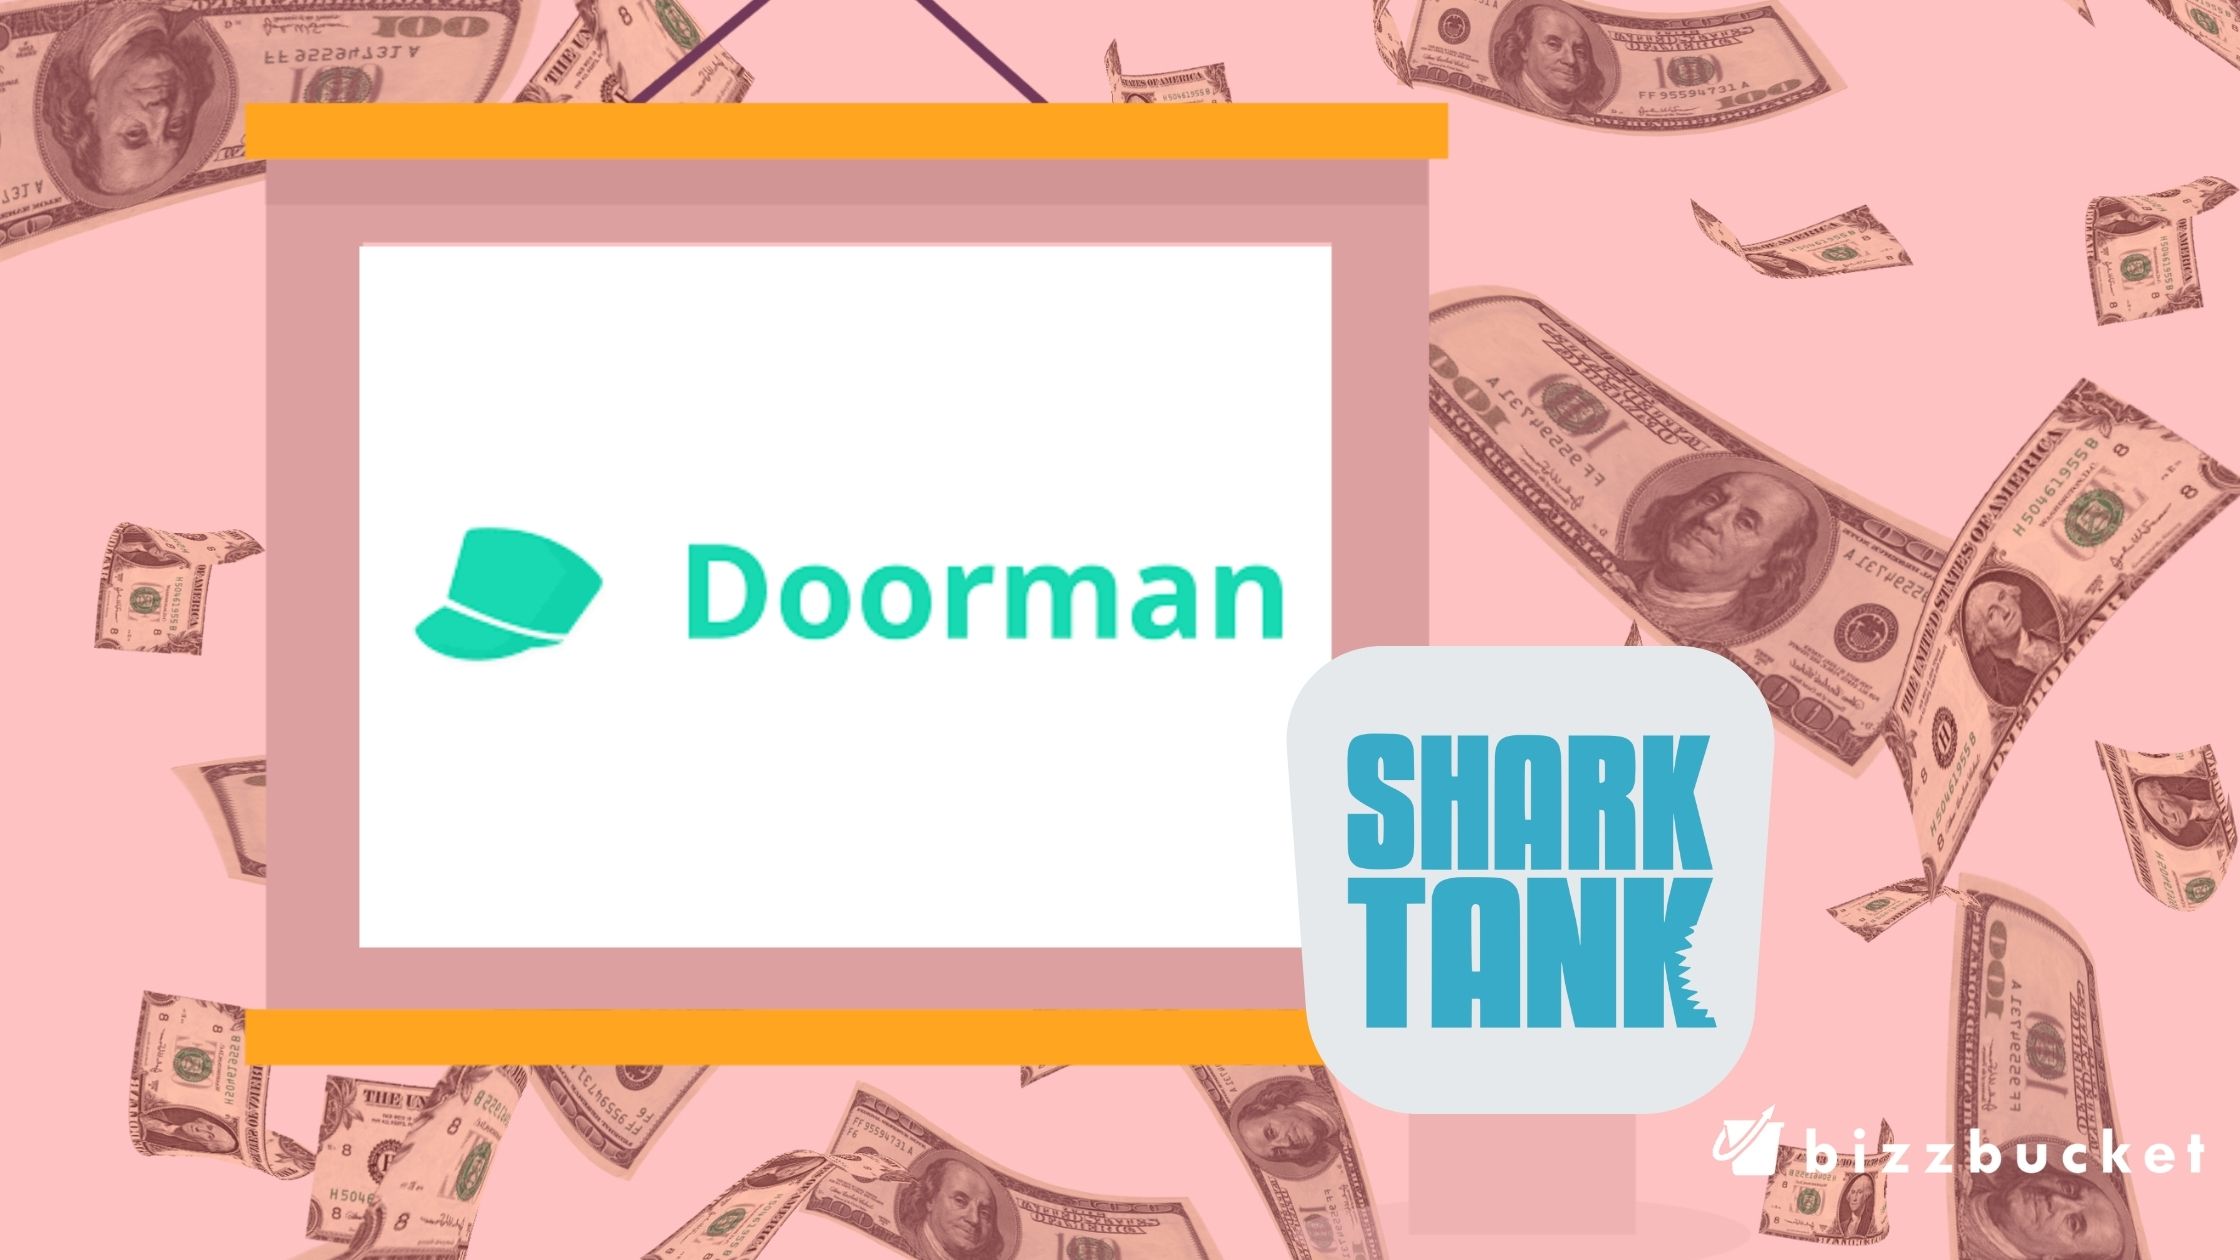 Doorman shark tank update